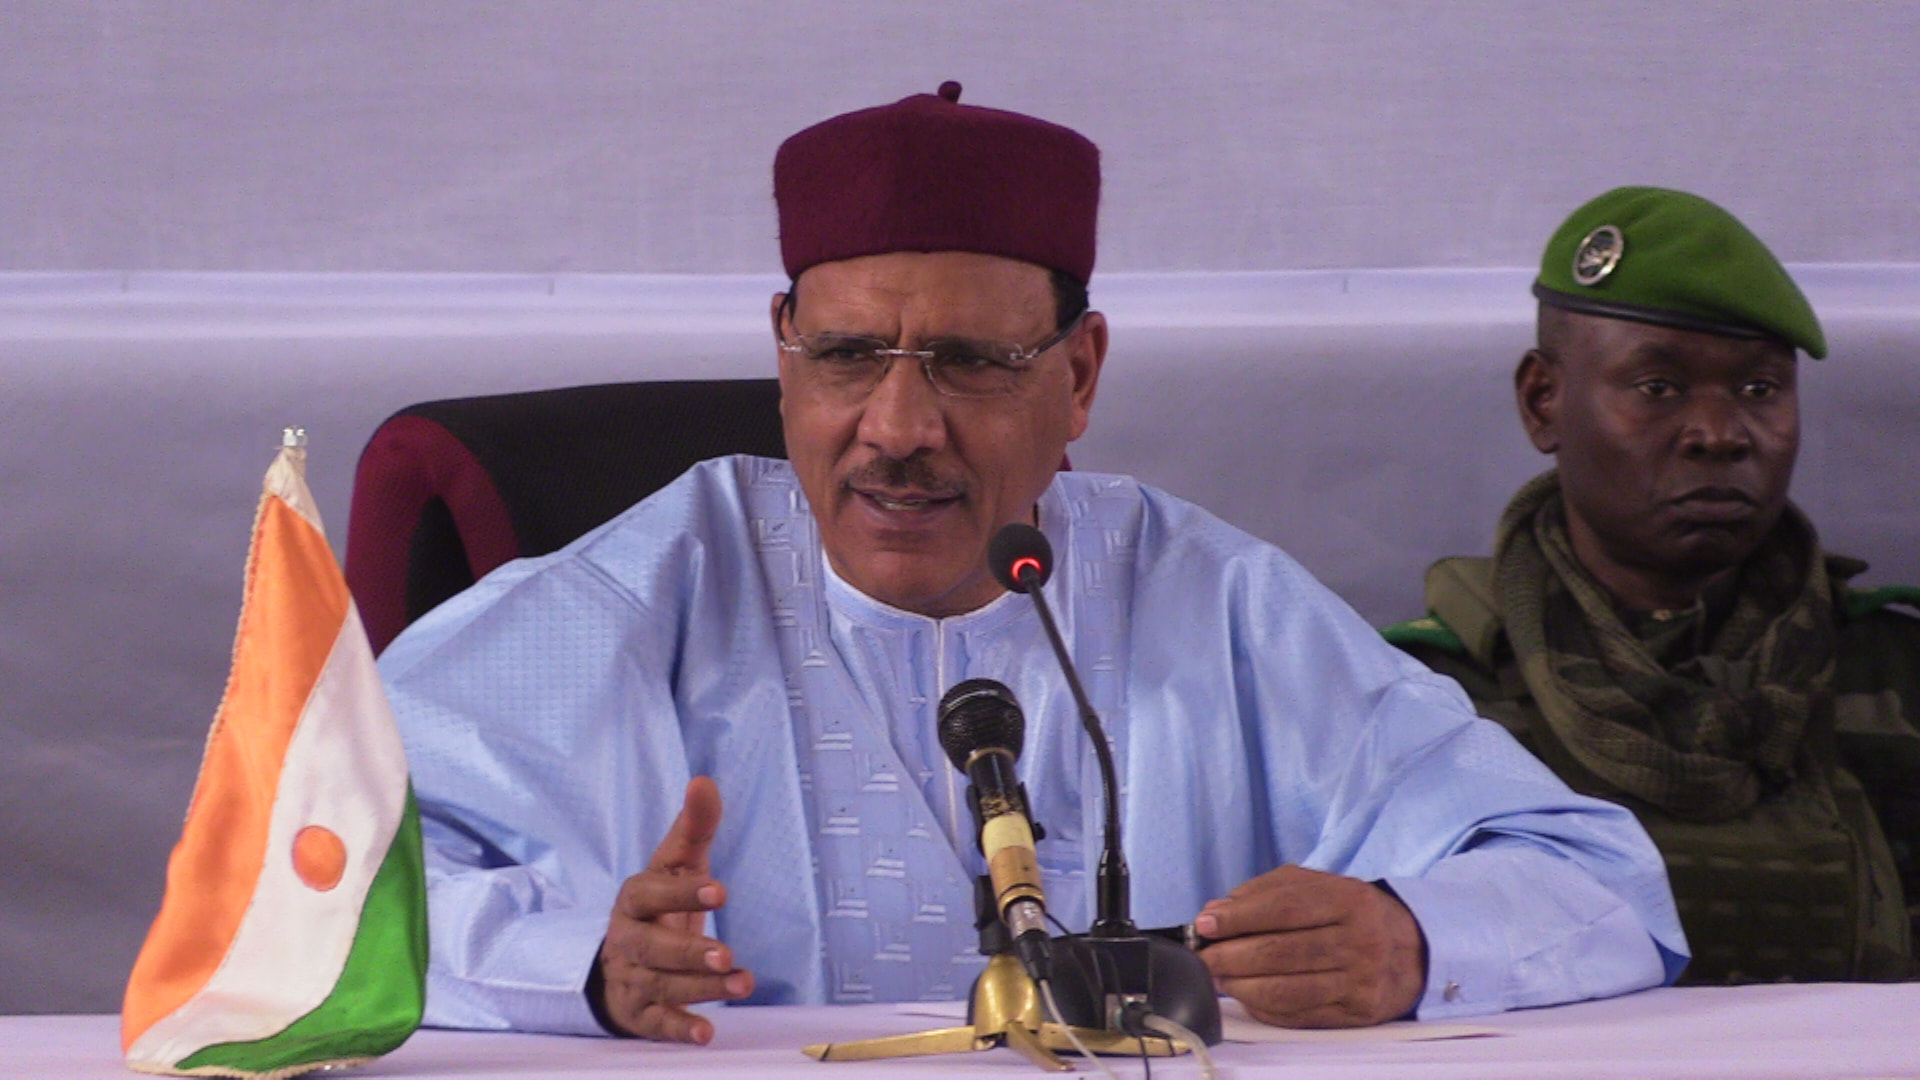 Le forum d’Agadez, « un espoir » selon Mohamed Bazoum